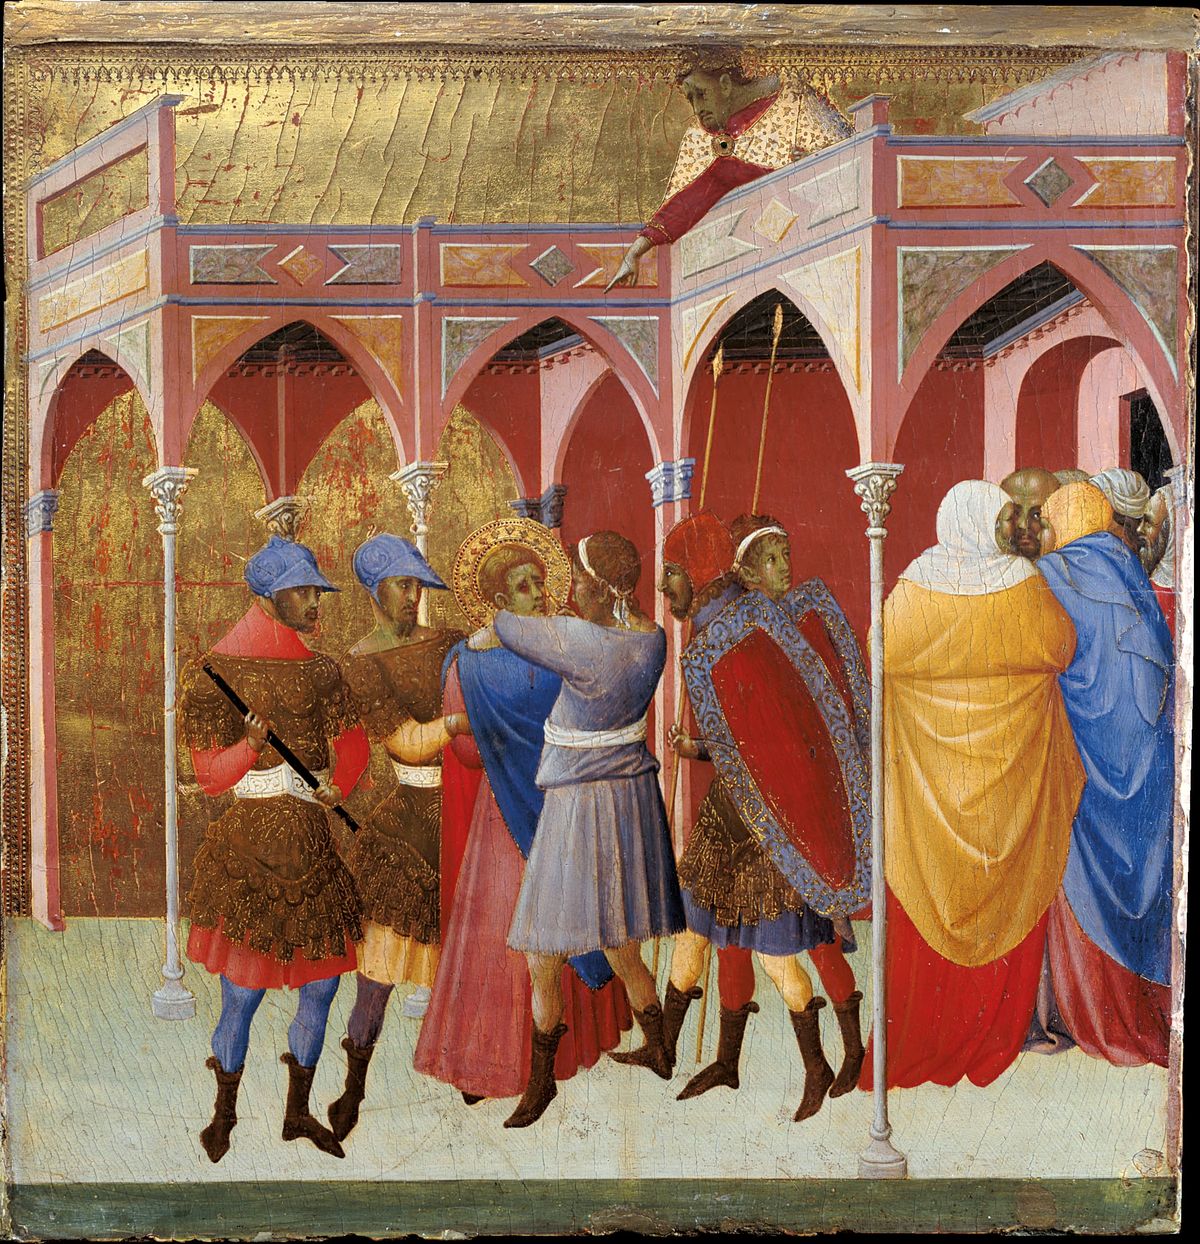 The Blinding of St. Victor (1351) by Bartolomeo Bulgarini - Public Domain Catholic Painting